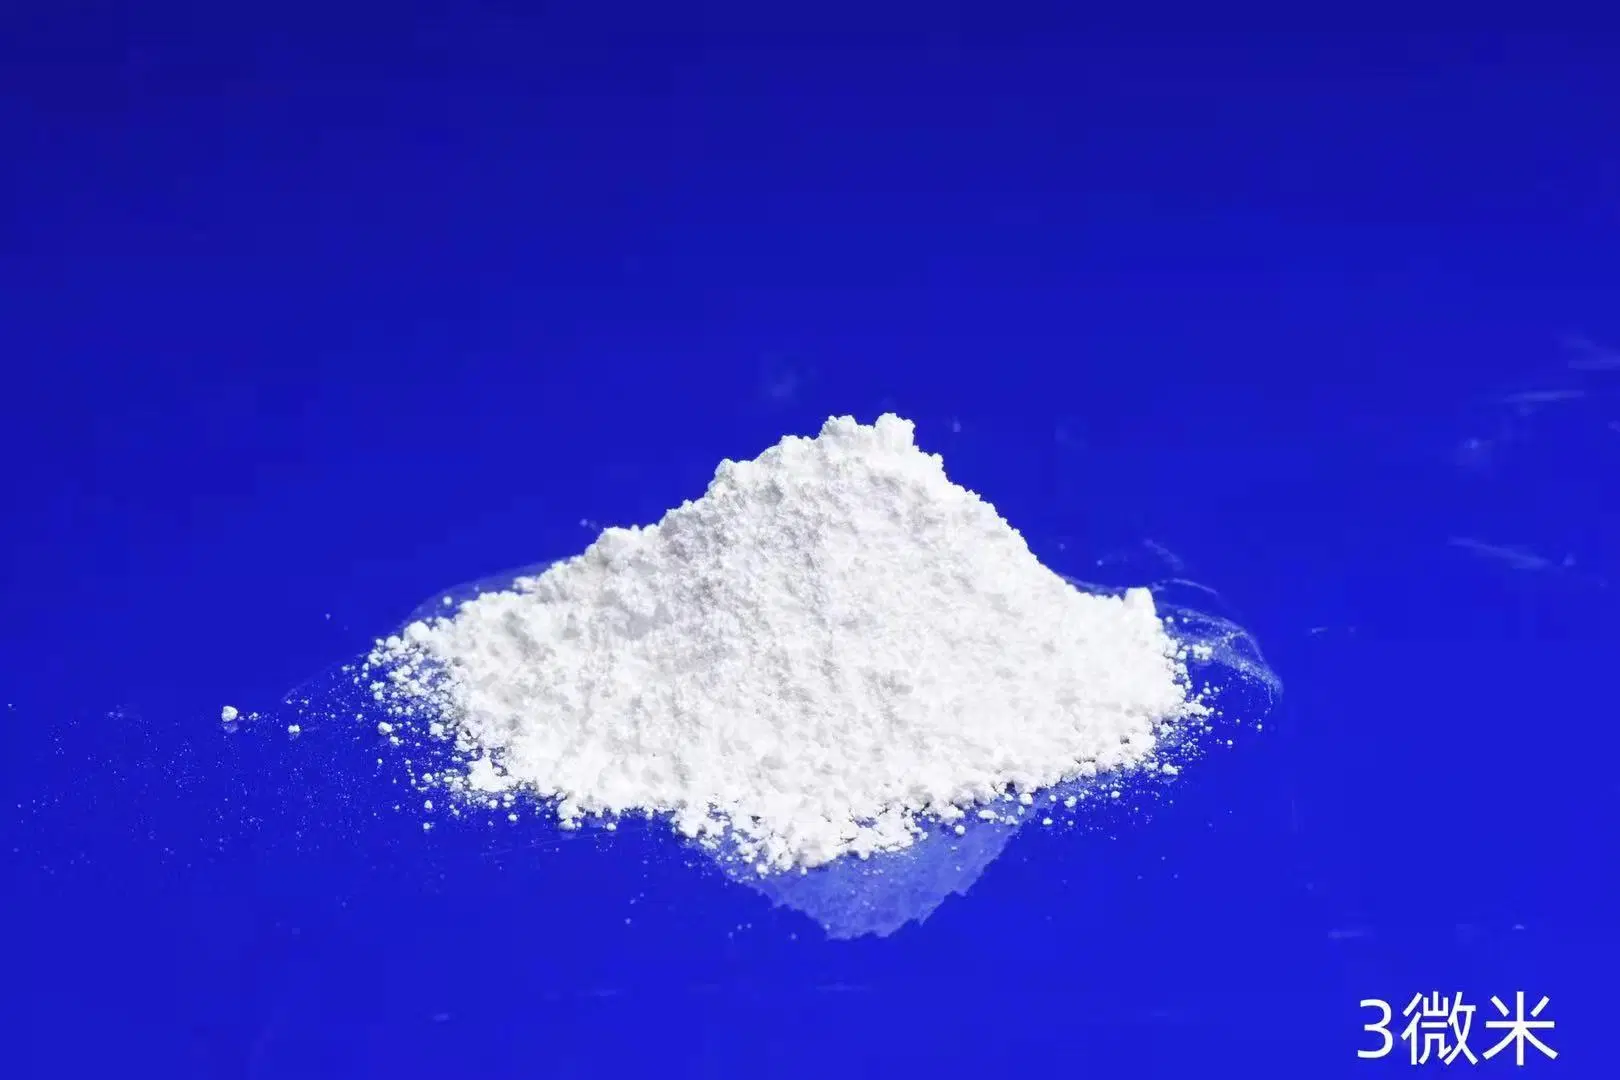 3,5um Fused Silica Powder mit hochreinem Quarz SiO2 99,95% Mikronpulver für Gießen